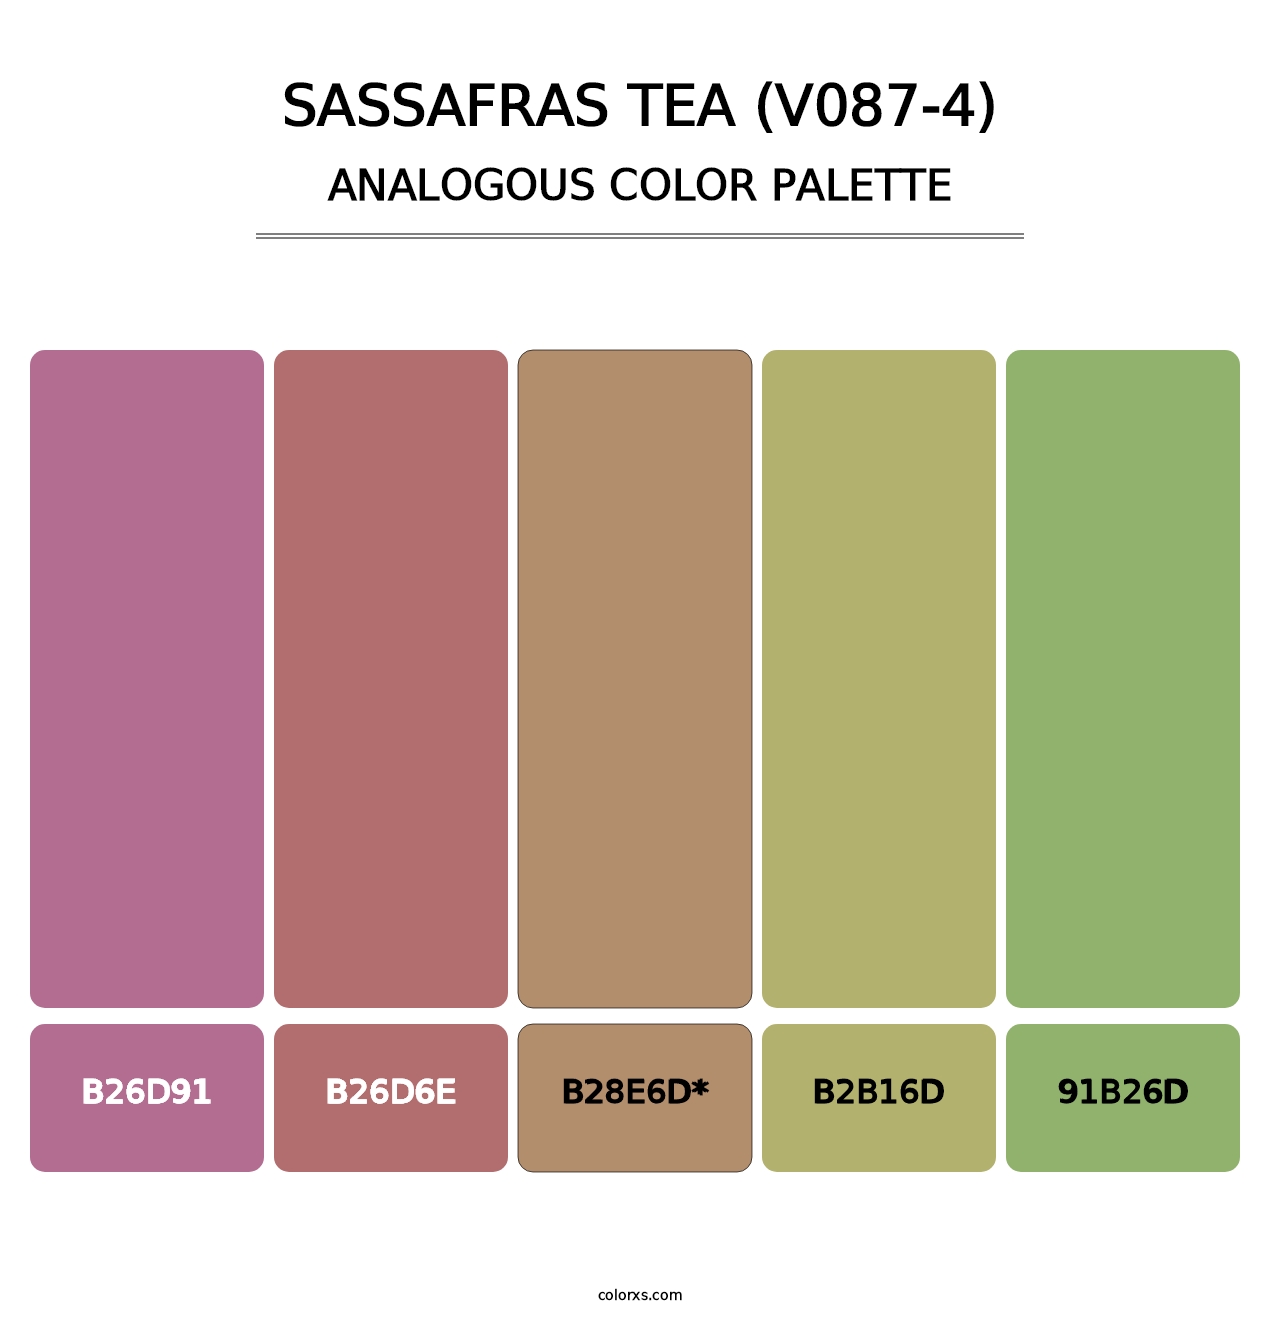 Sassafras Tea (V087-4) - Analogous Color Palette